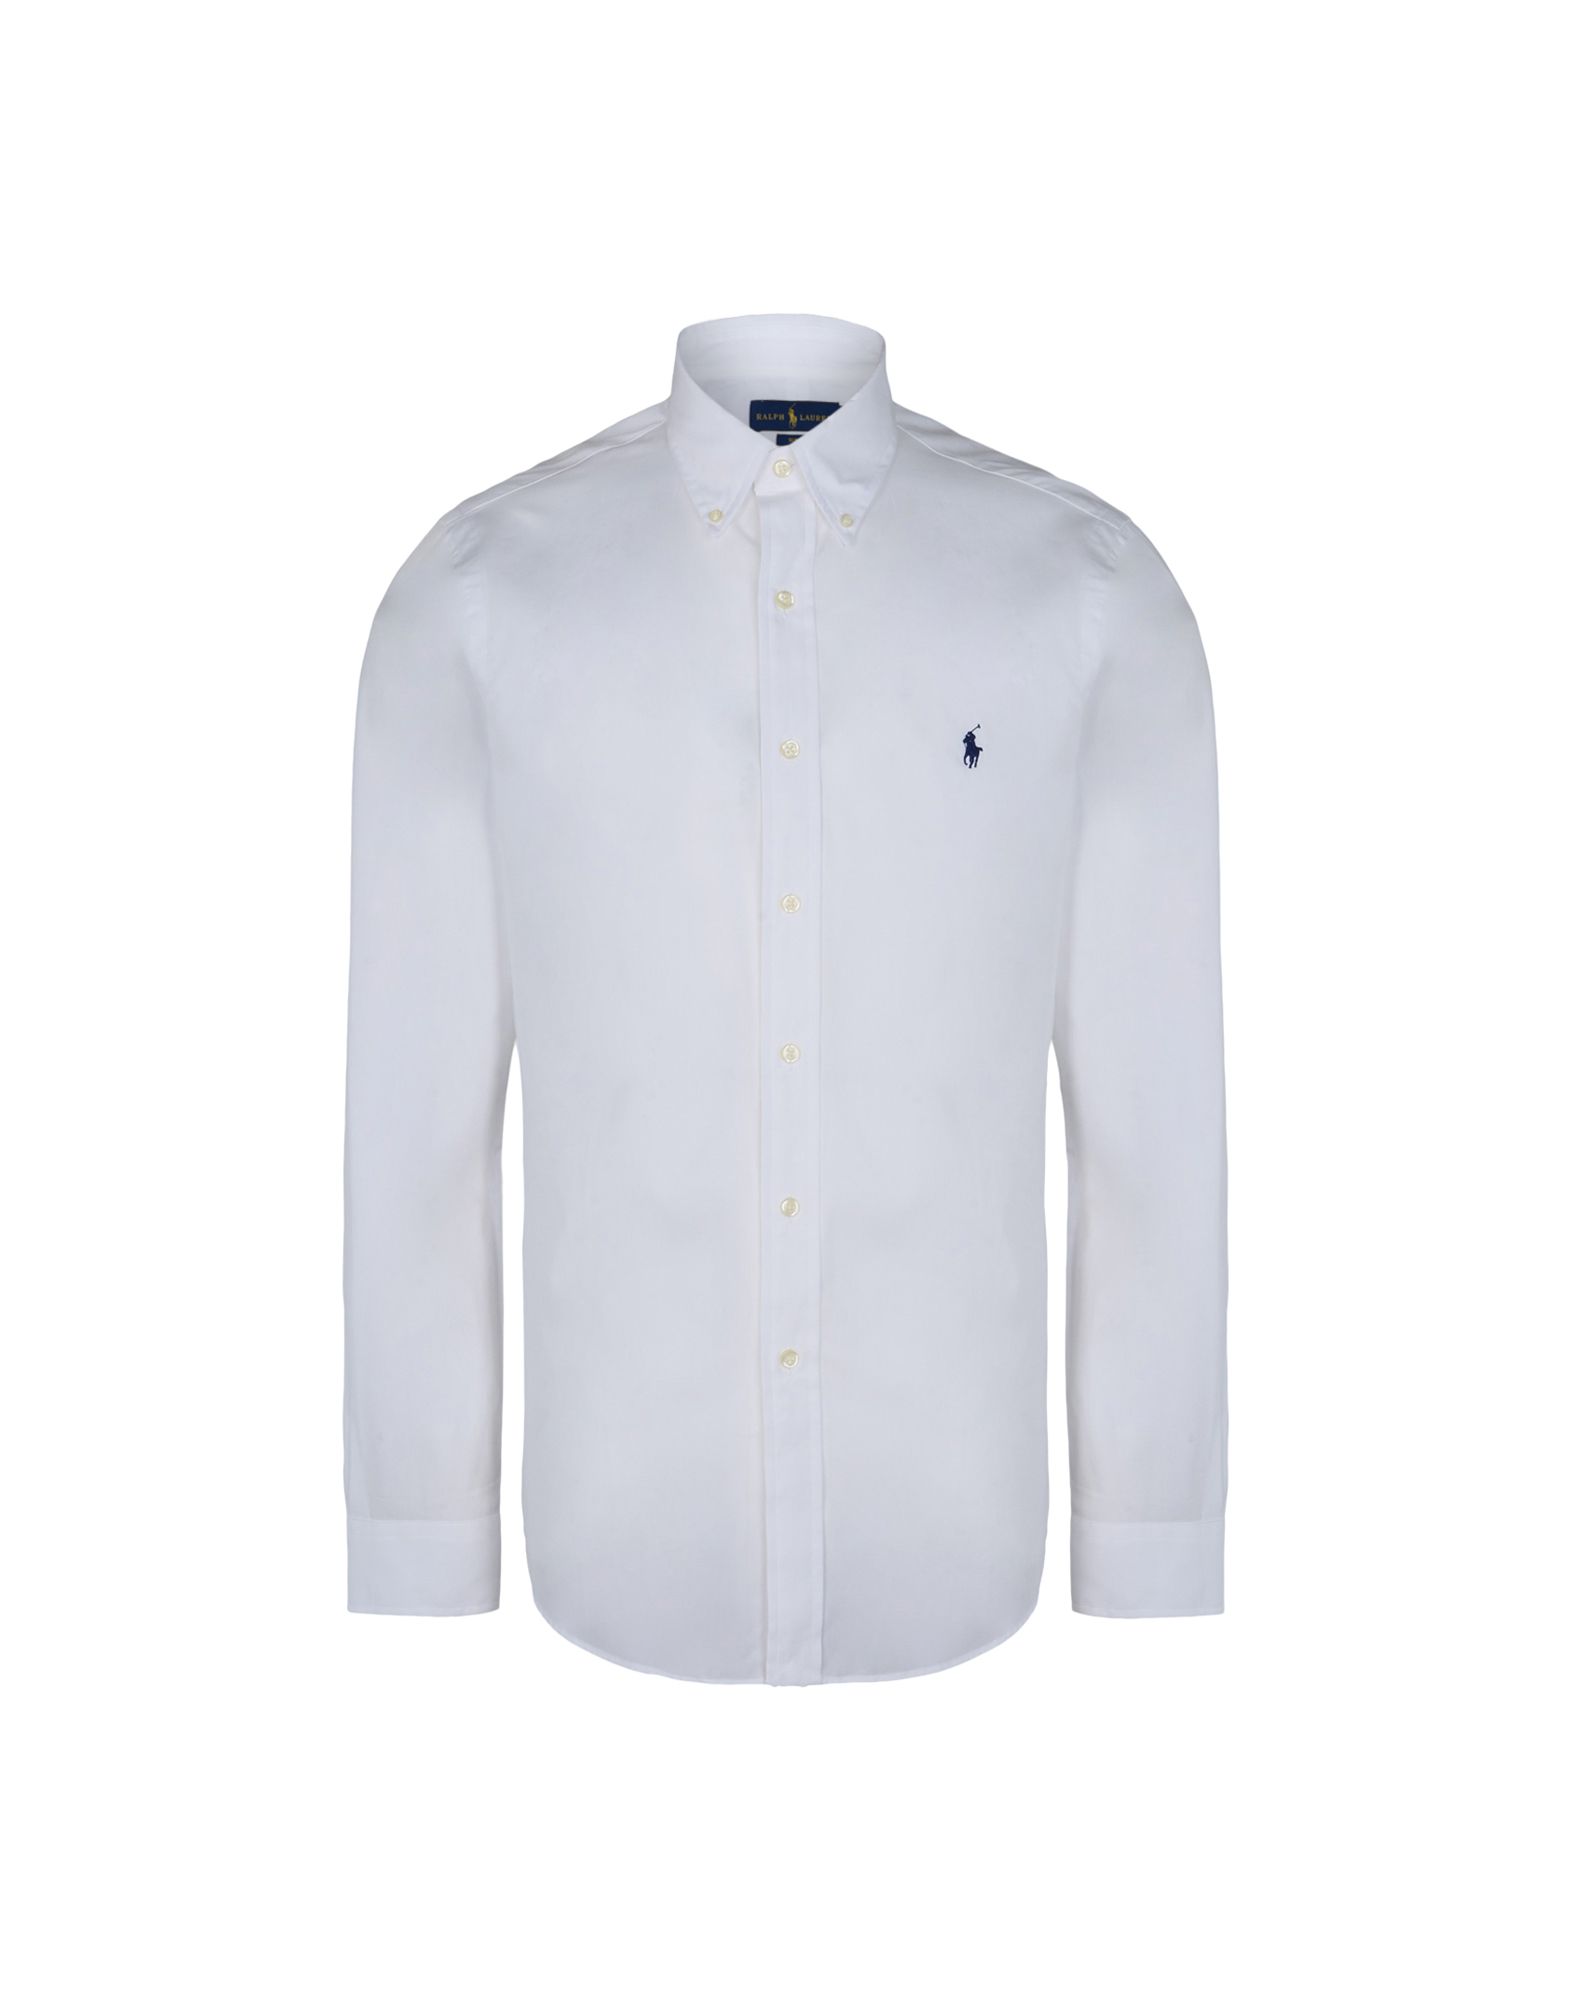 《送料無料》POLO RALPH LAUREN メンズ シャツ ホワイト M コットン 100% Slim Fit Cotton Poplin Shirt